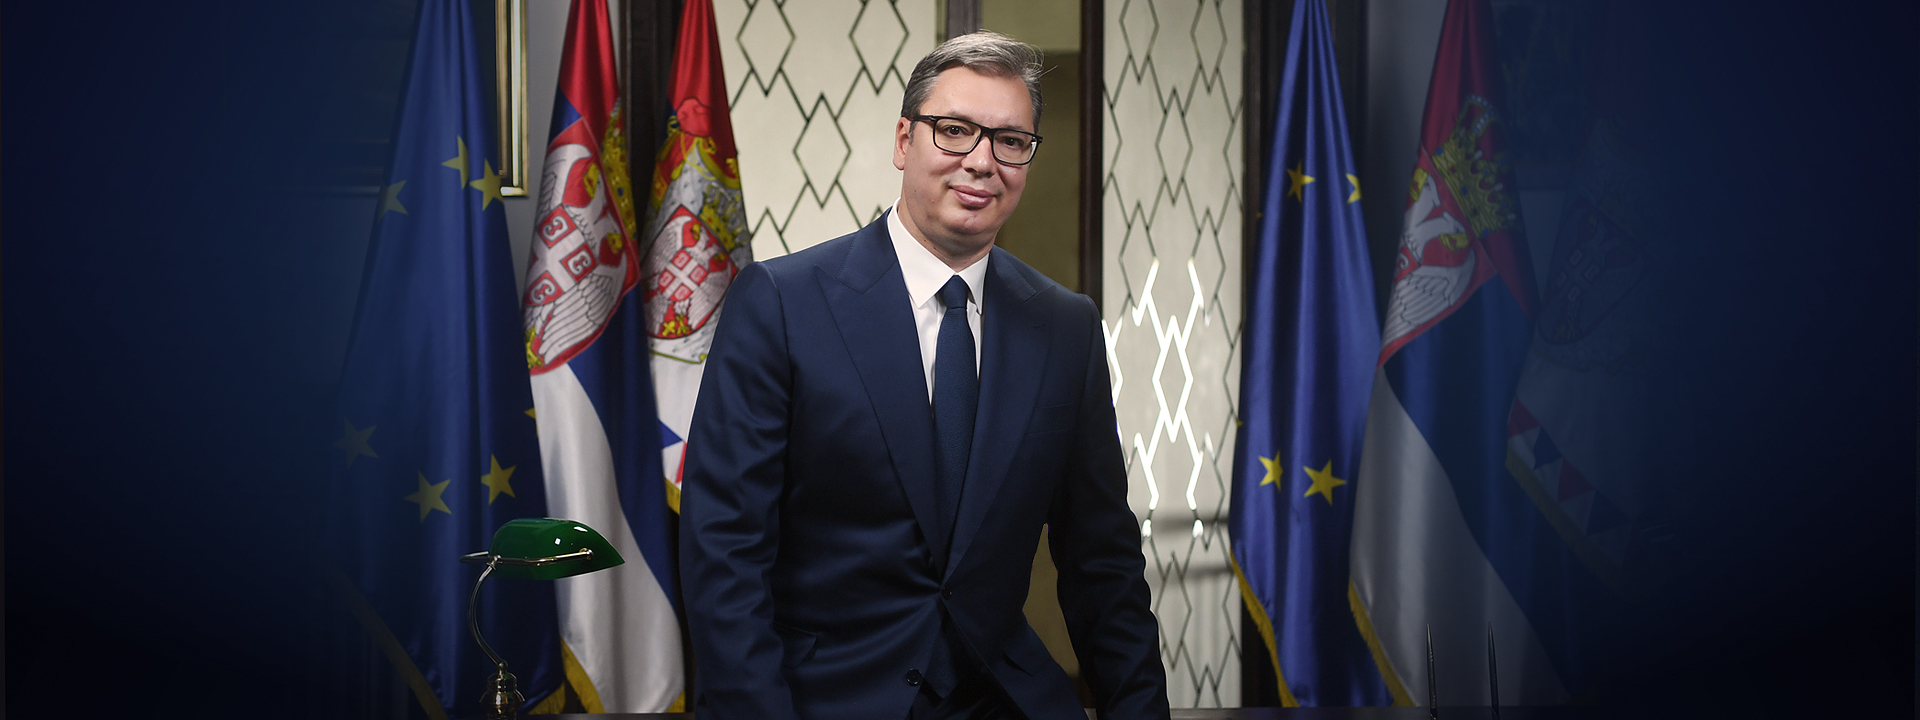 Predsednik Srbije predložio dijalog o litijumu: “Srbija može da proizvede 58 HILJADA tona litijum karbonata”